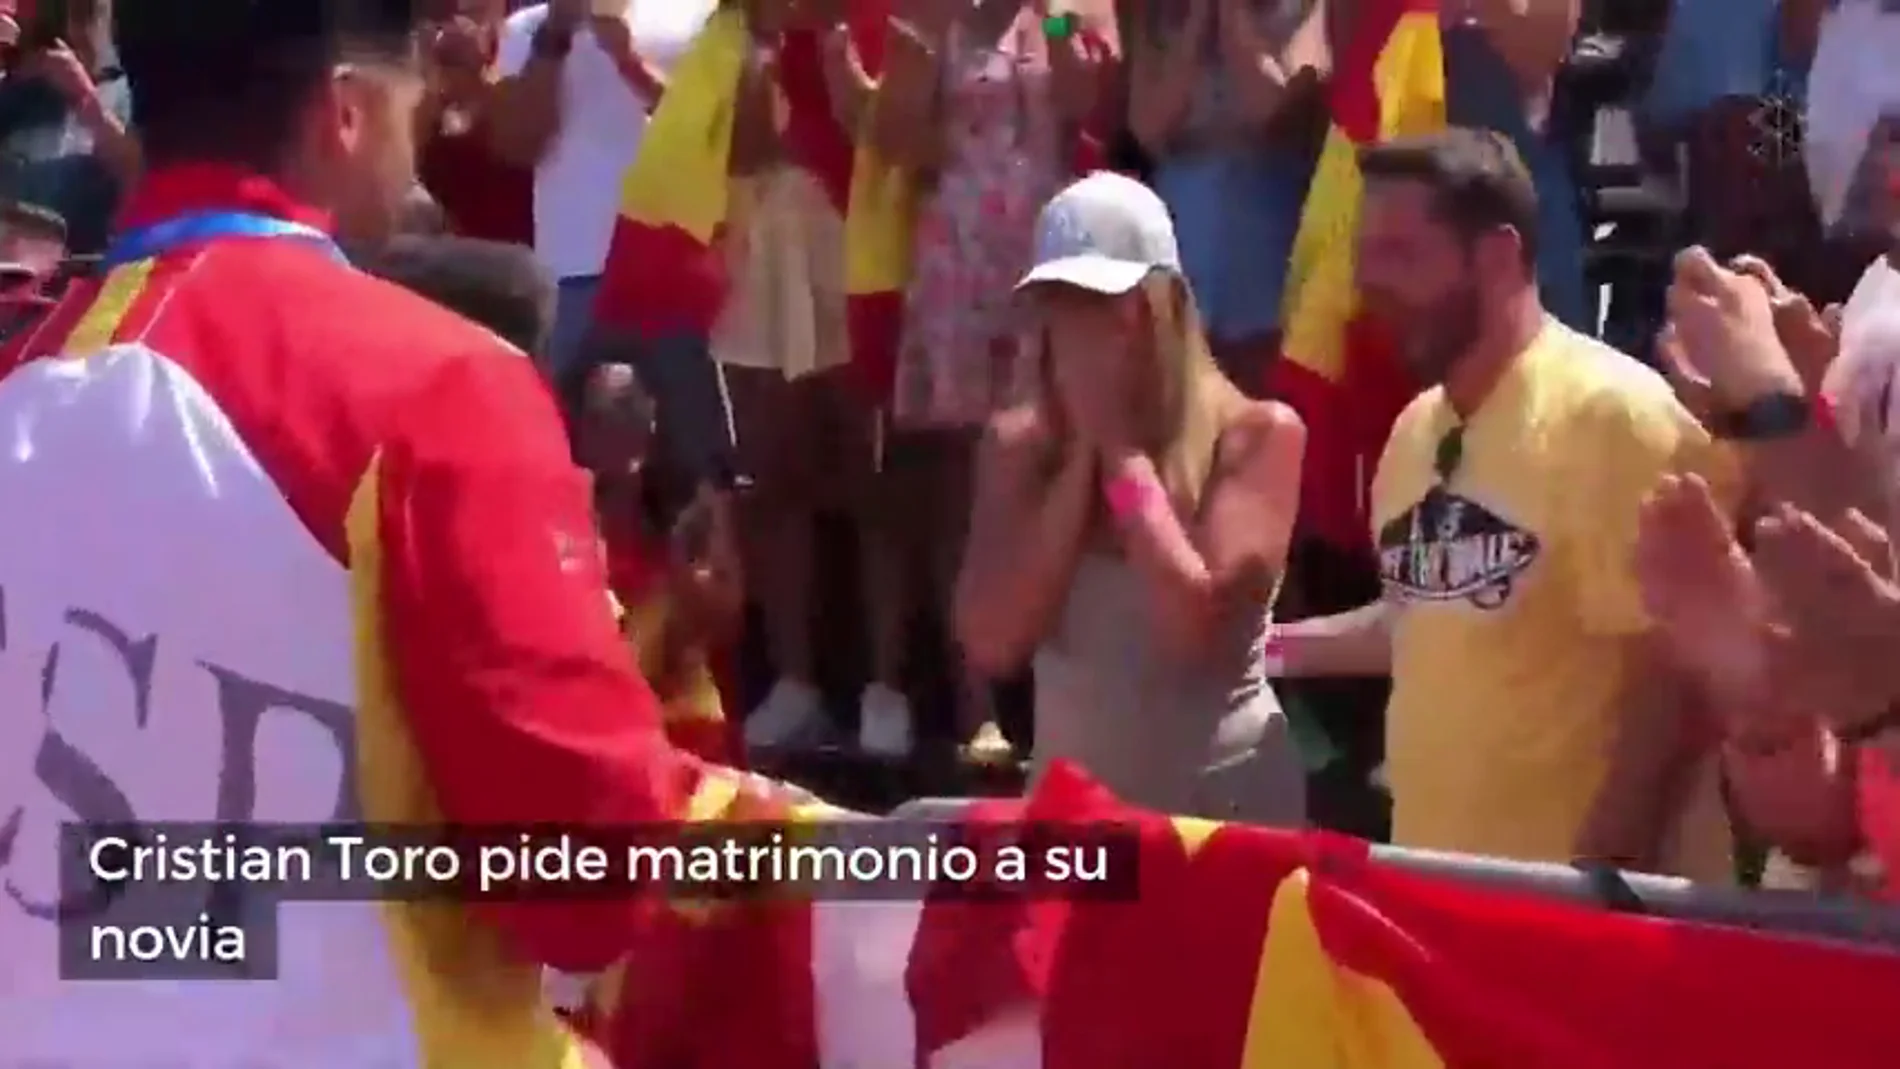 Cristian Toro pide matrimonio a su novia nada más bajar del podio en el Mundial